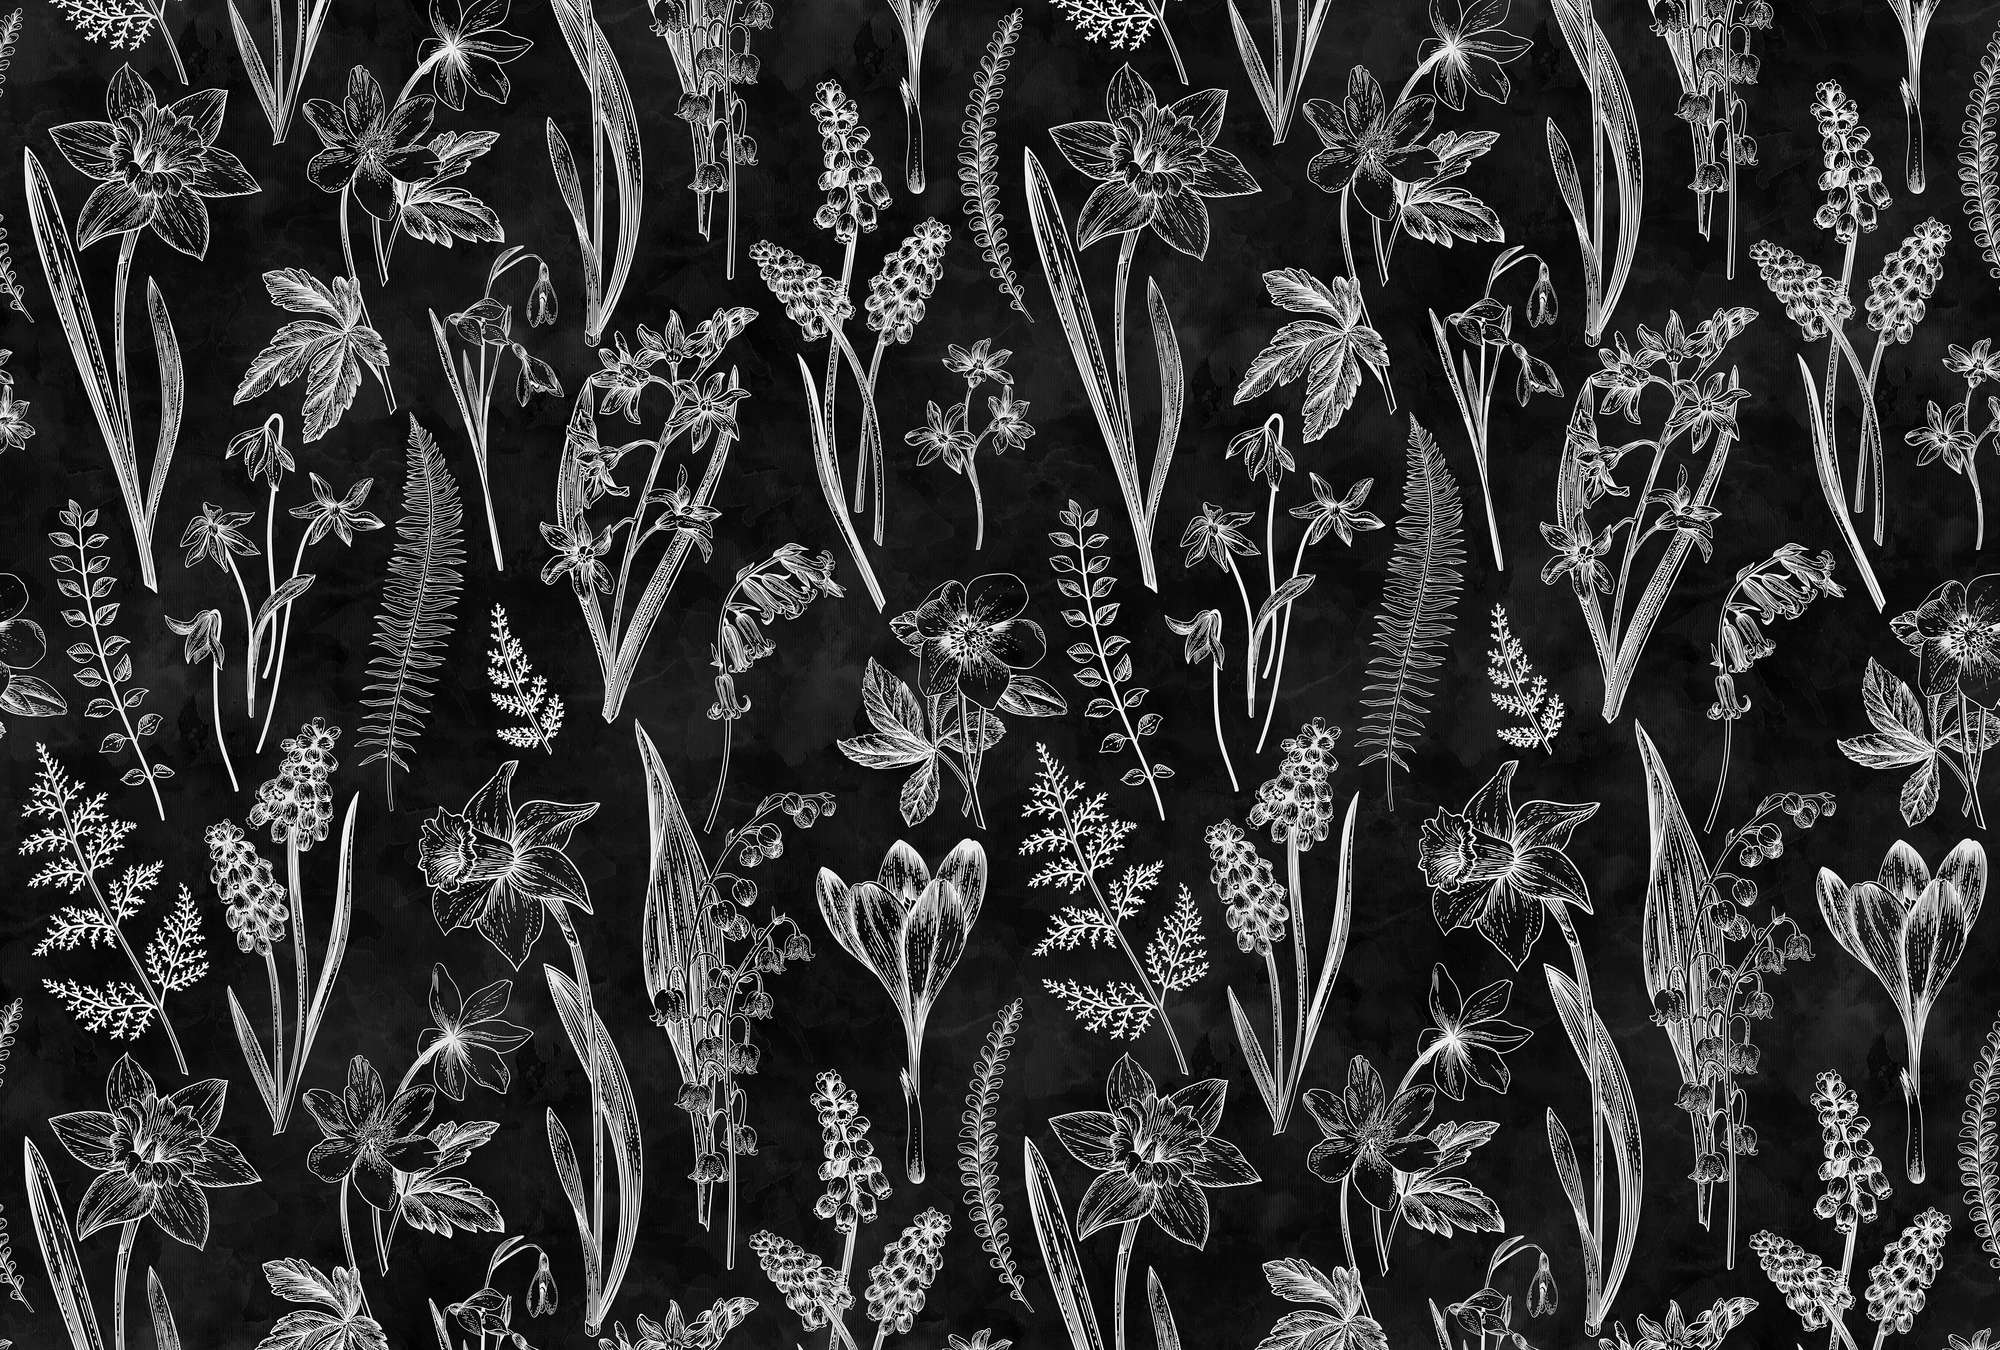             Fotomurali Design botanico in bianco e nero
        